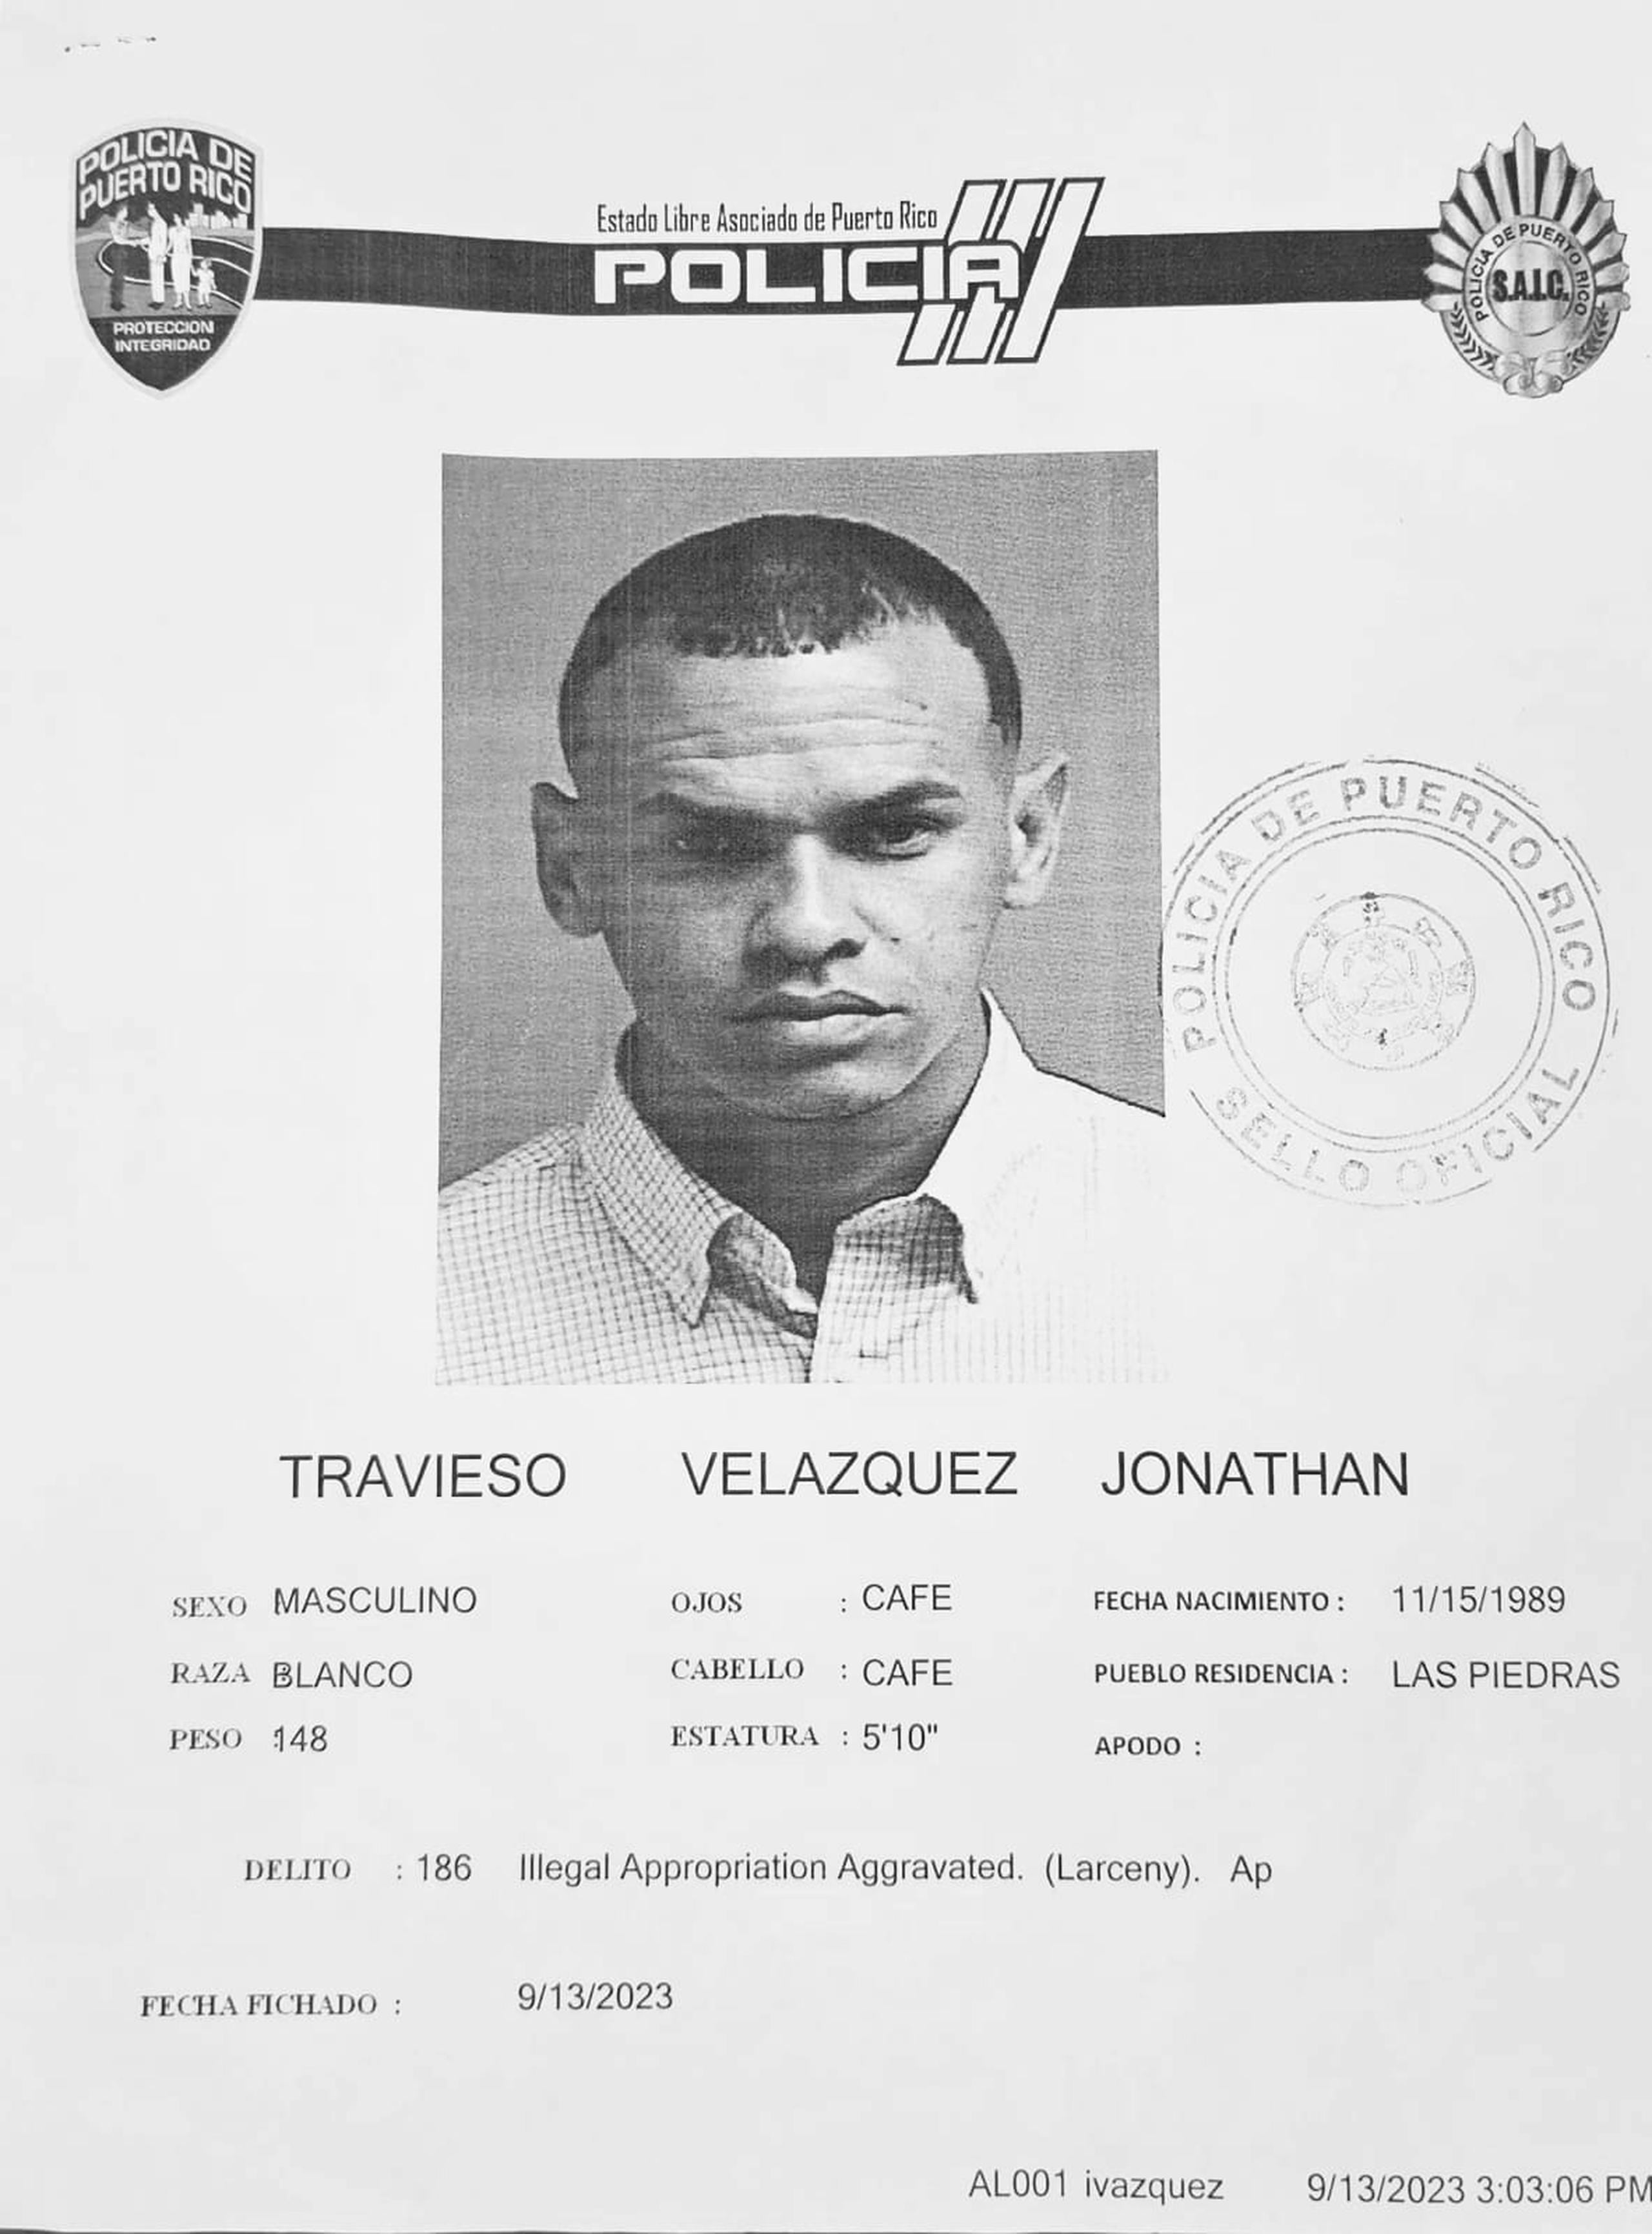 Jonathan Travieso Velázquez enfrenta cargos por fraude, falsedad ideológica y apropiación ilegal agravada.